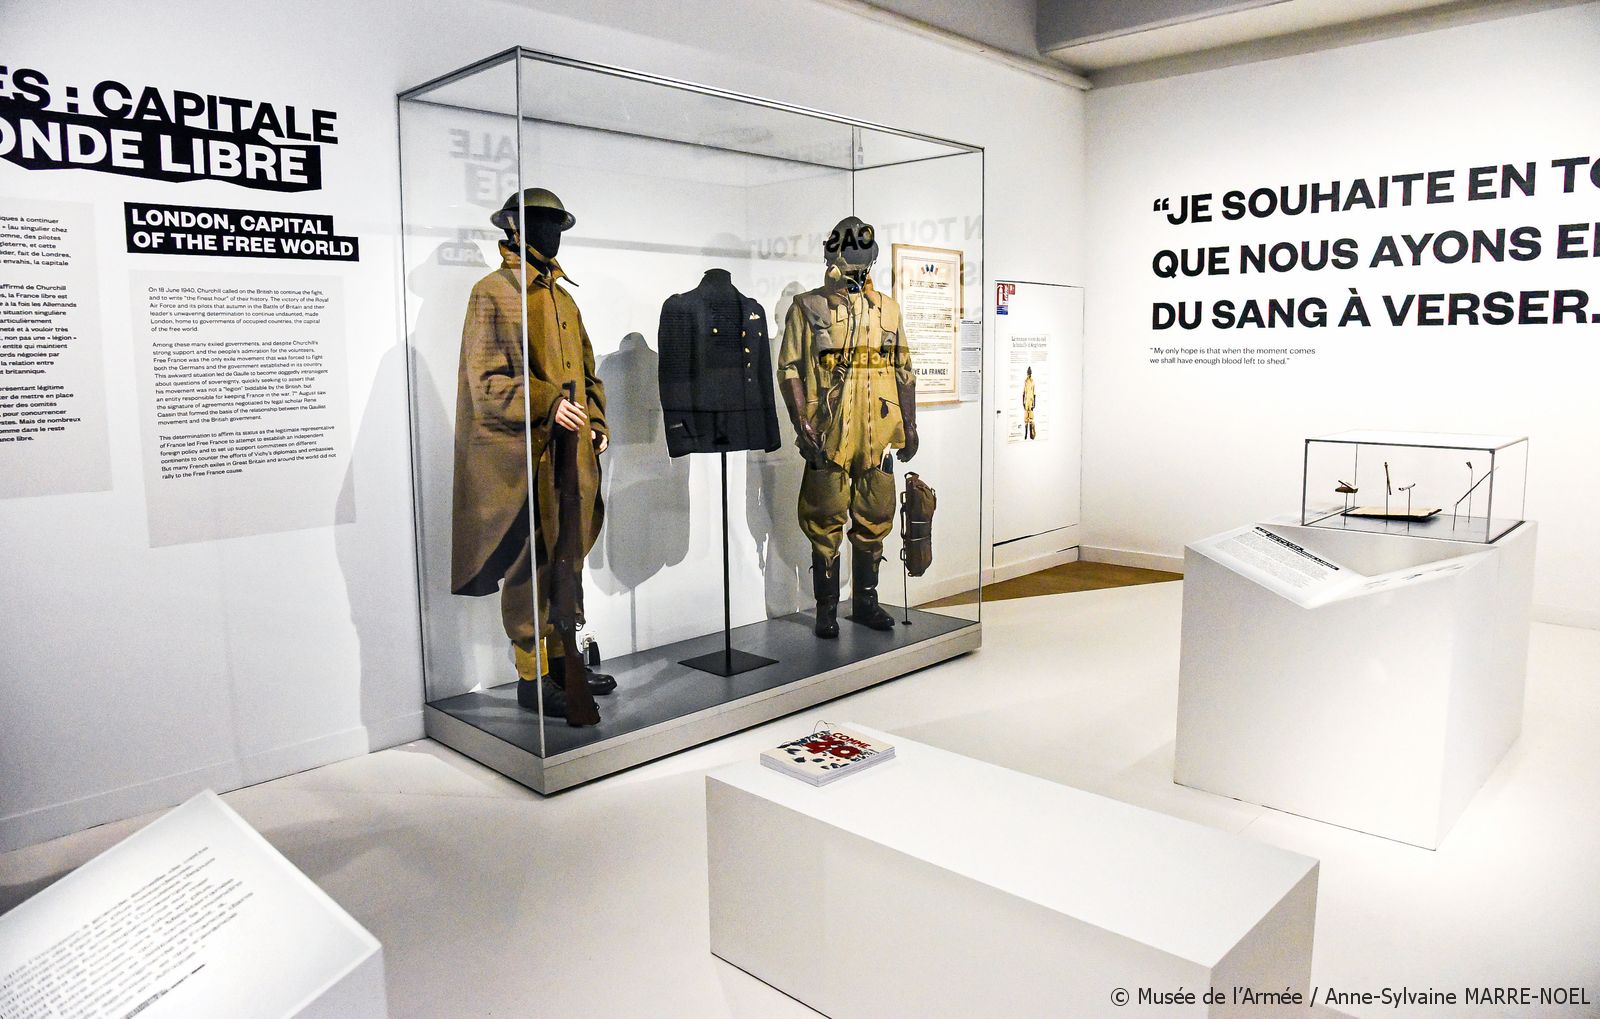 museum exhibit showcases Paris